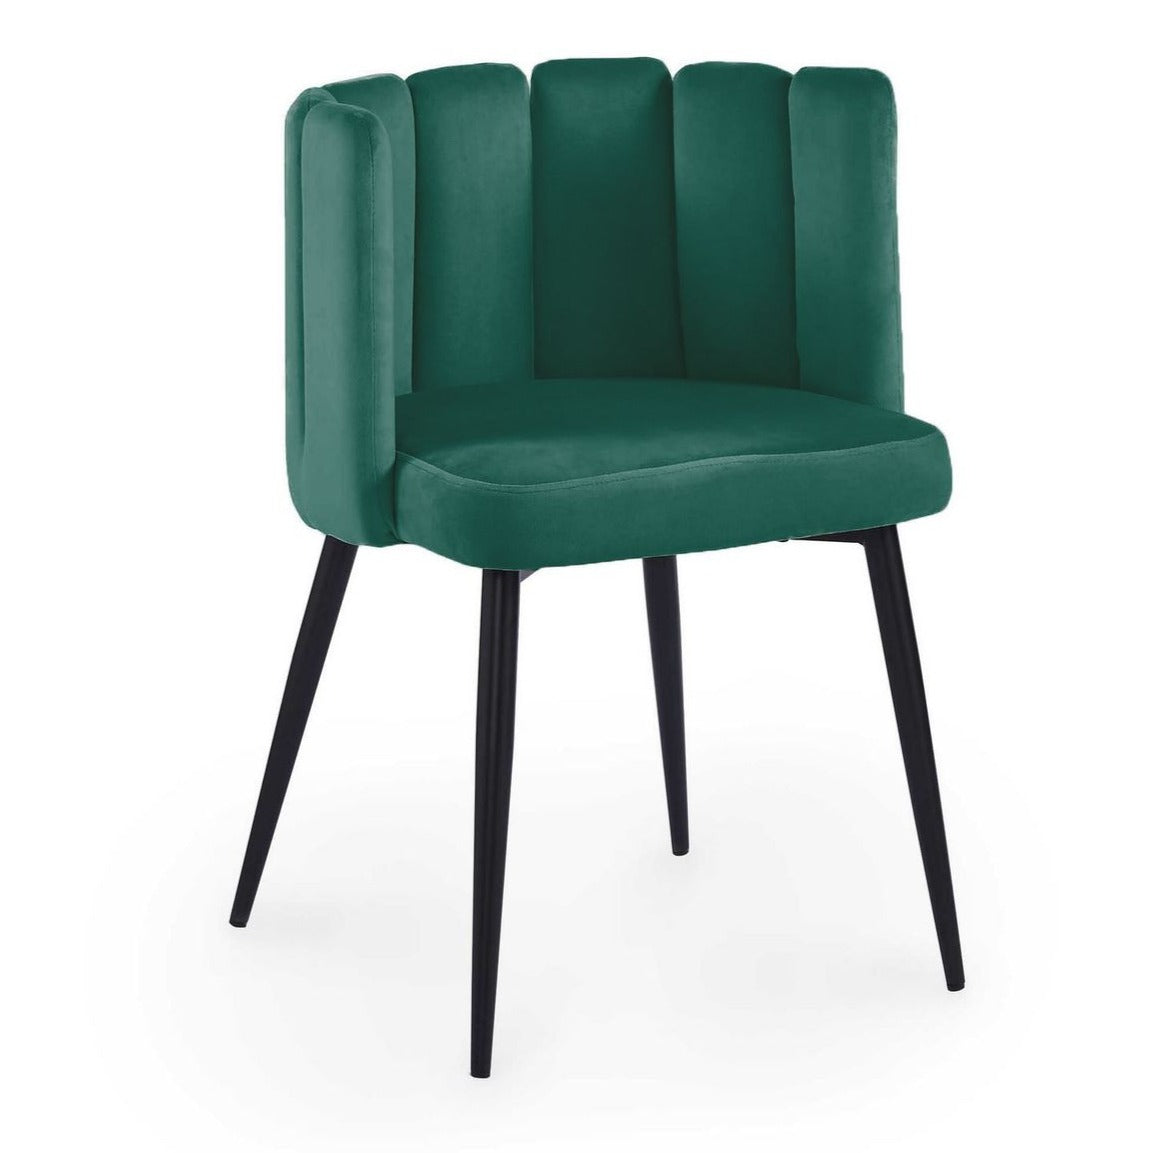 1_2304193835-lot-de-2-chaises-design-en-velours-vert-debby.jpg